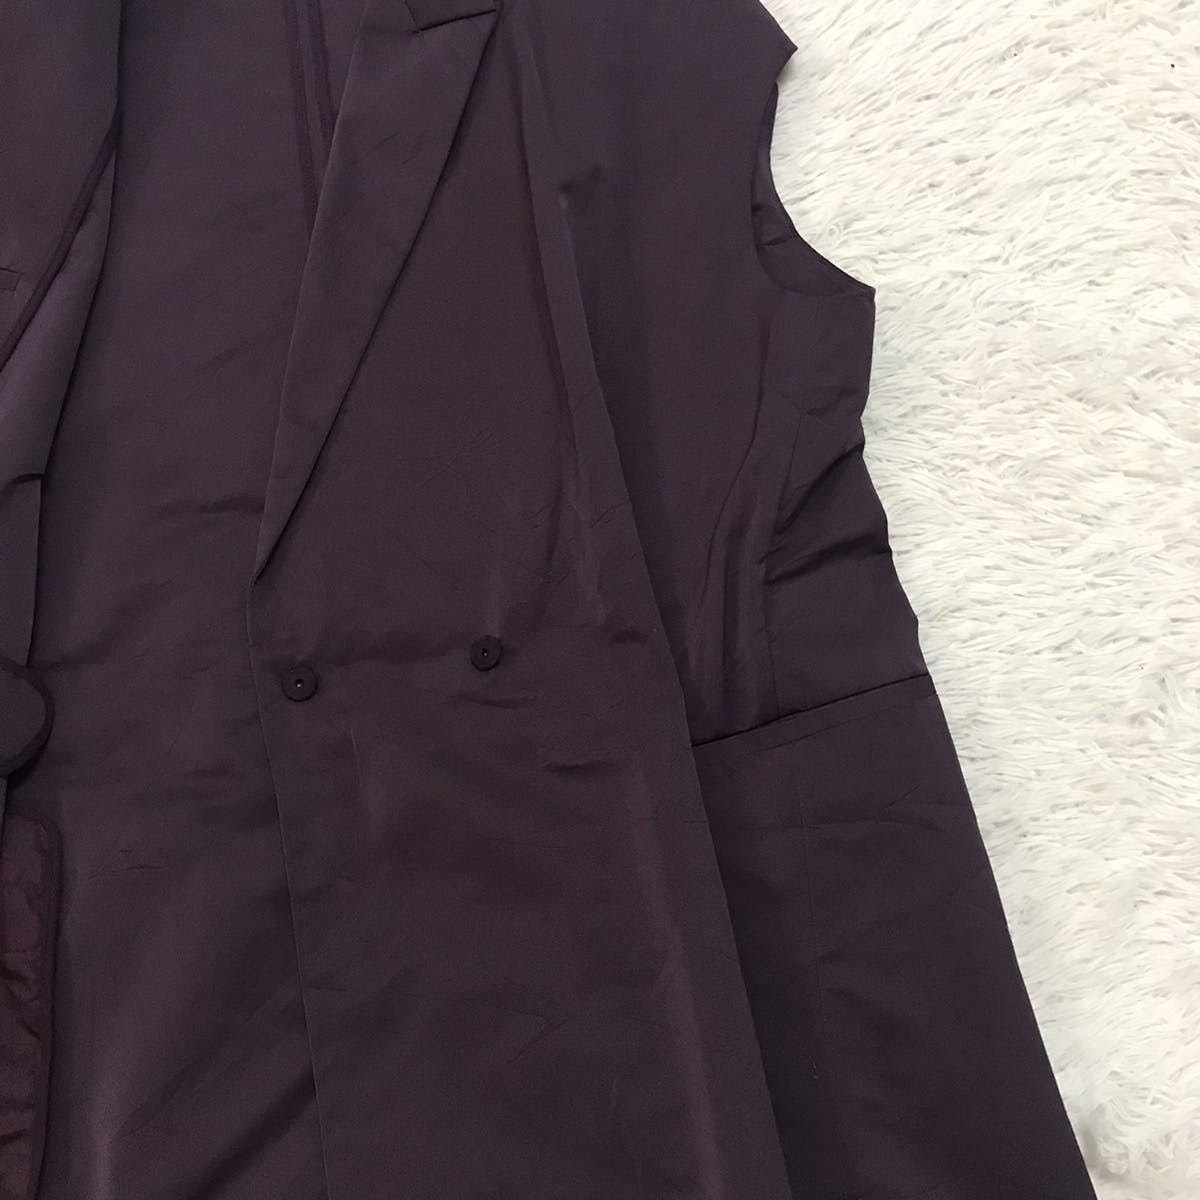 Marni Women Sleeveless Jacket Style Made in Italy - 9